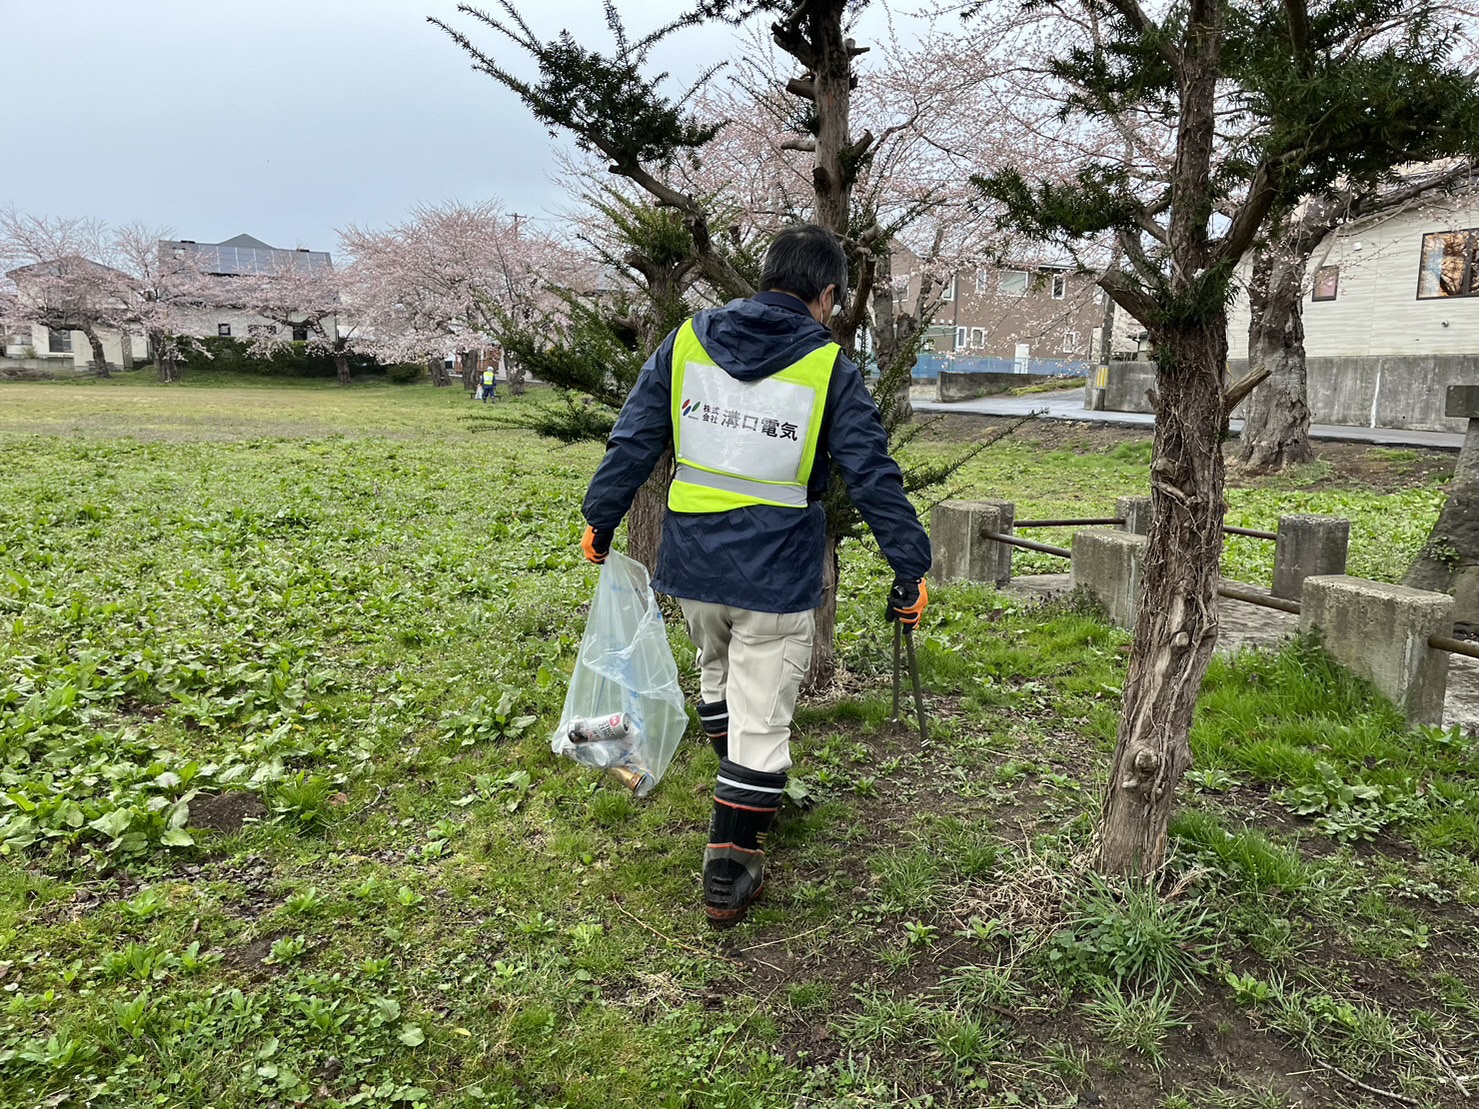 桜の花の咲く公園内でトングとごみ袋を手に持ち、活動する男性の写真